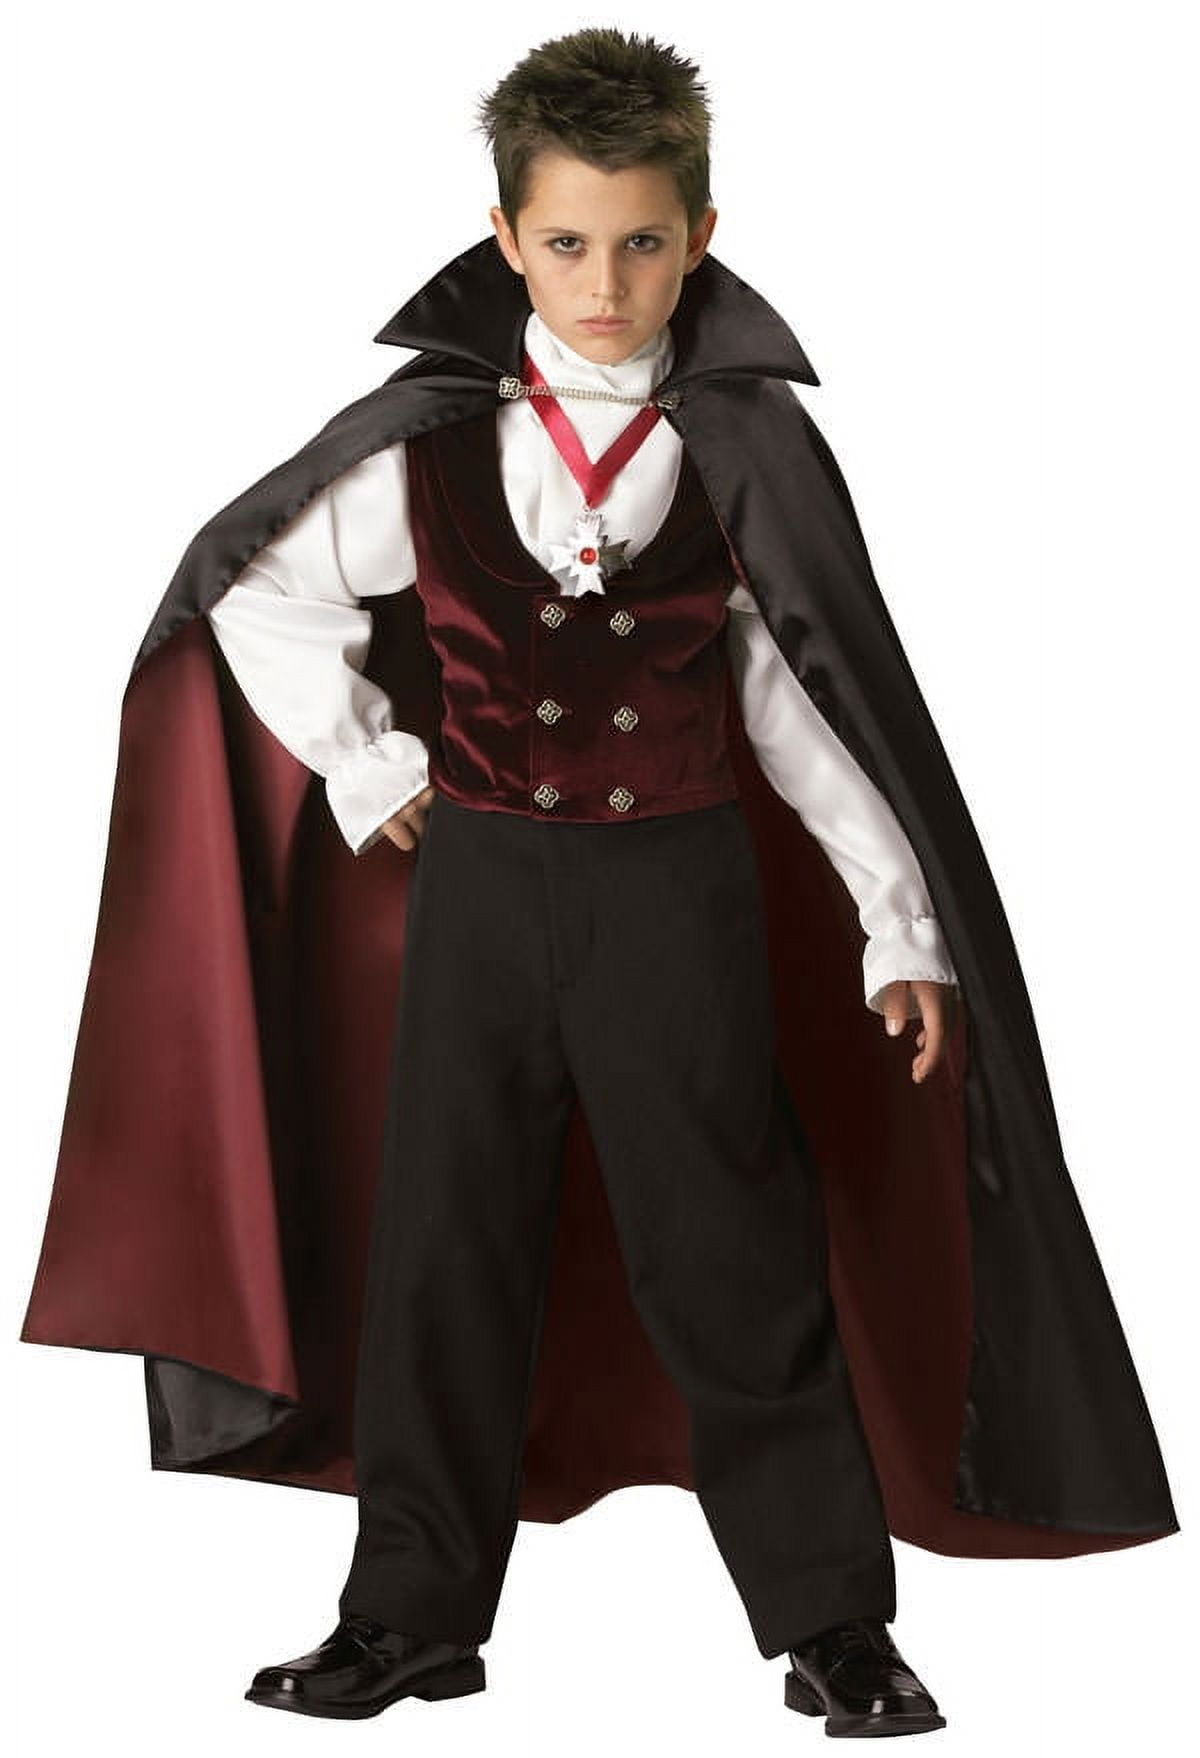 Boy In Halloween Vampire Makeup Costume Stock Photo - Download